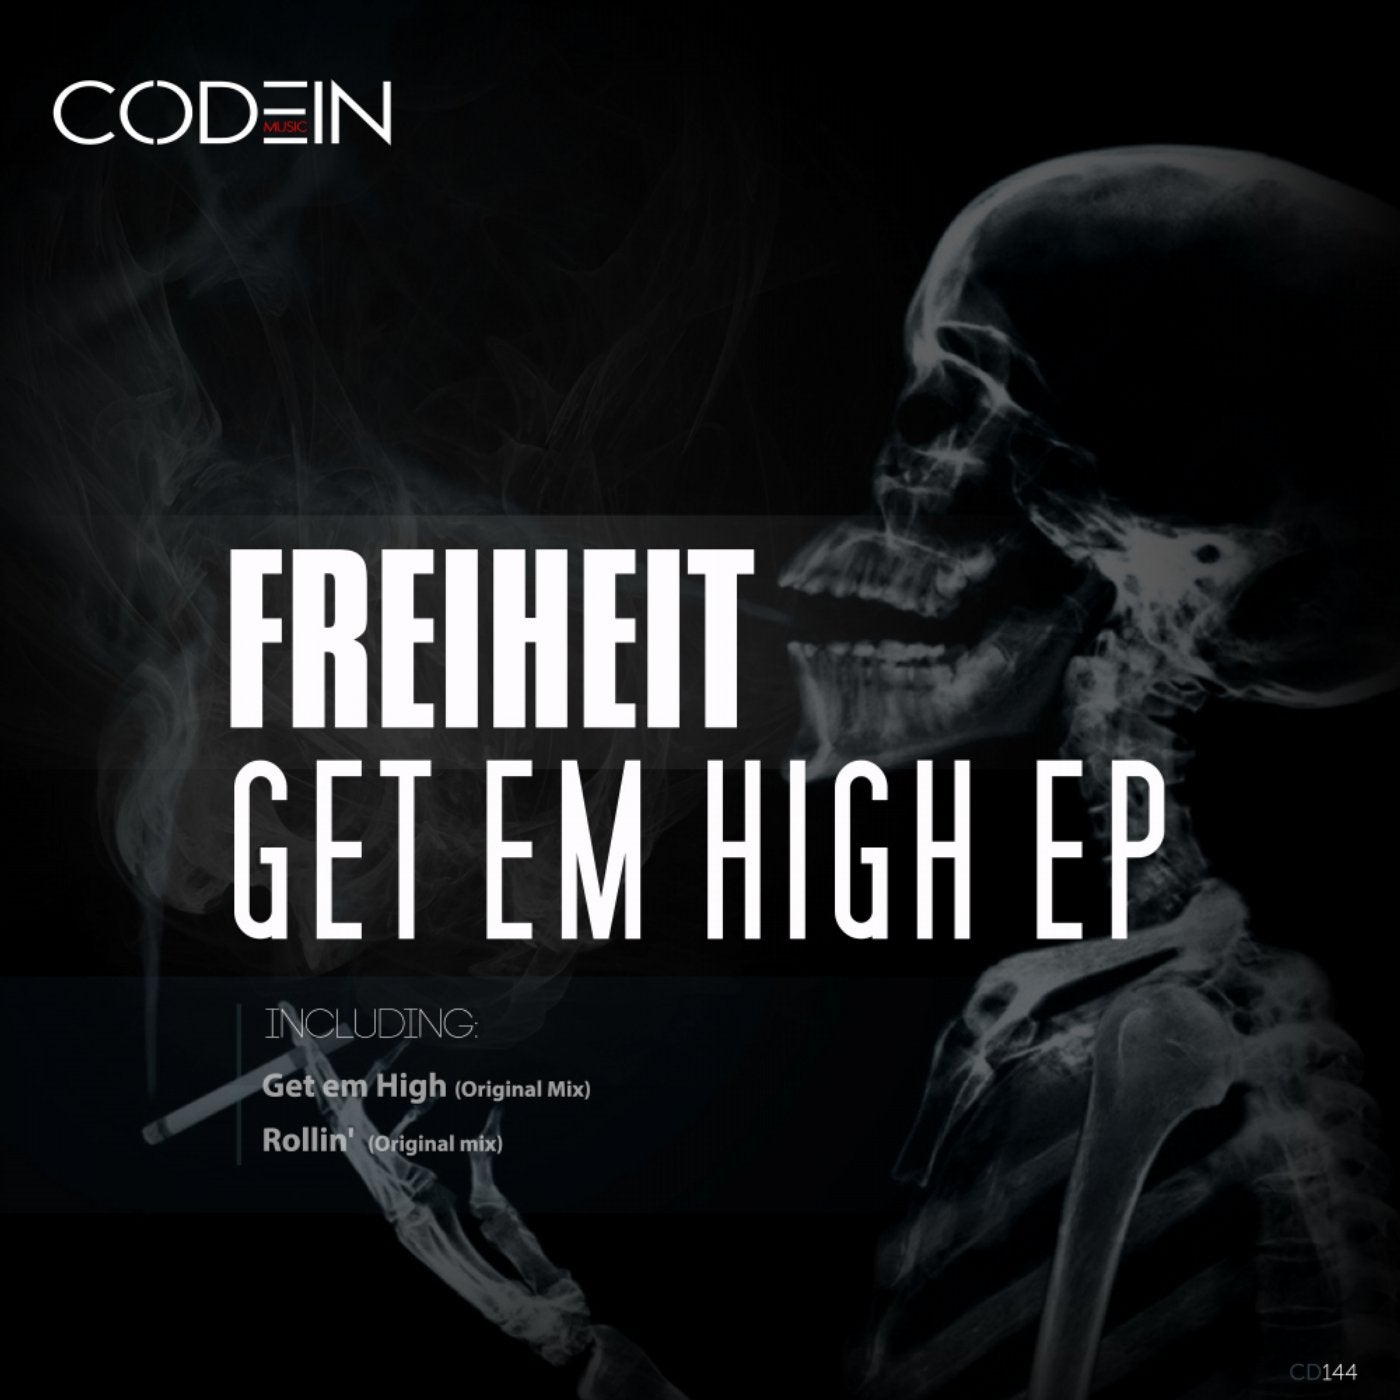 Get Em High EP